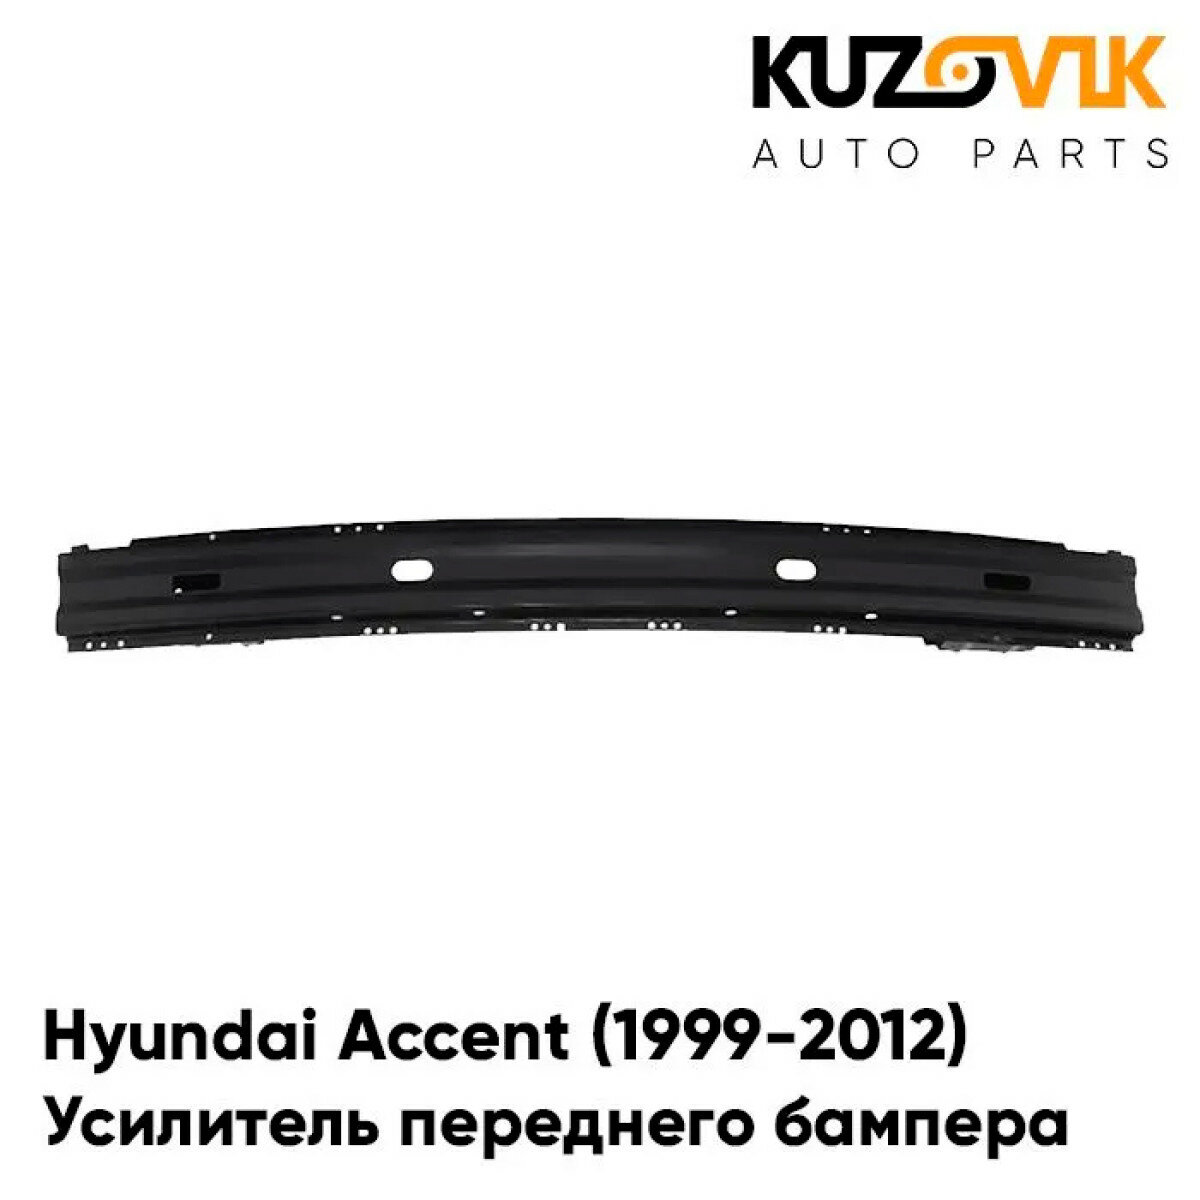 Усилитель переднего бампера Hyundai Accent (1999-2012)